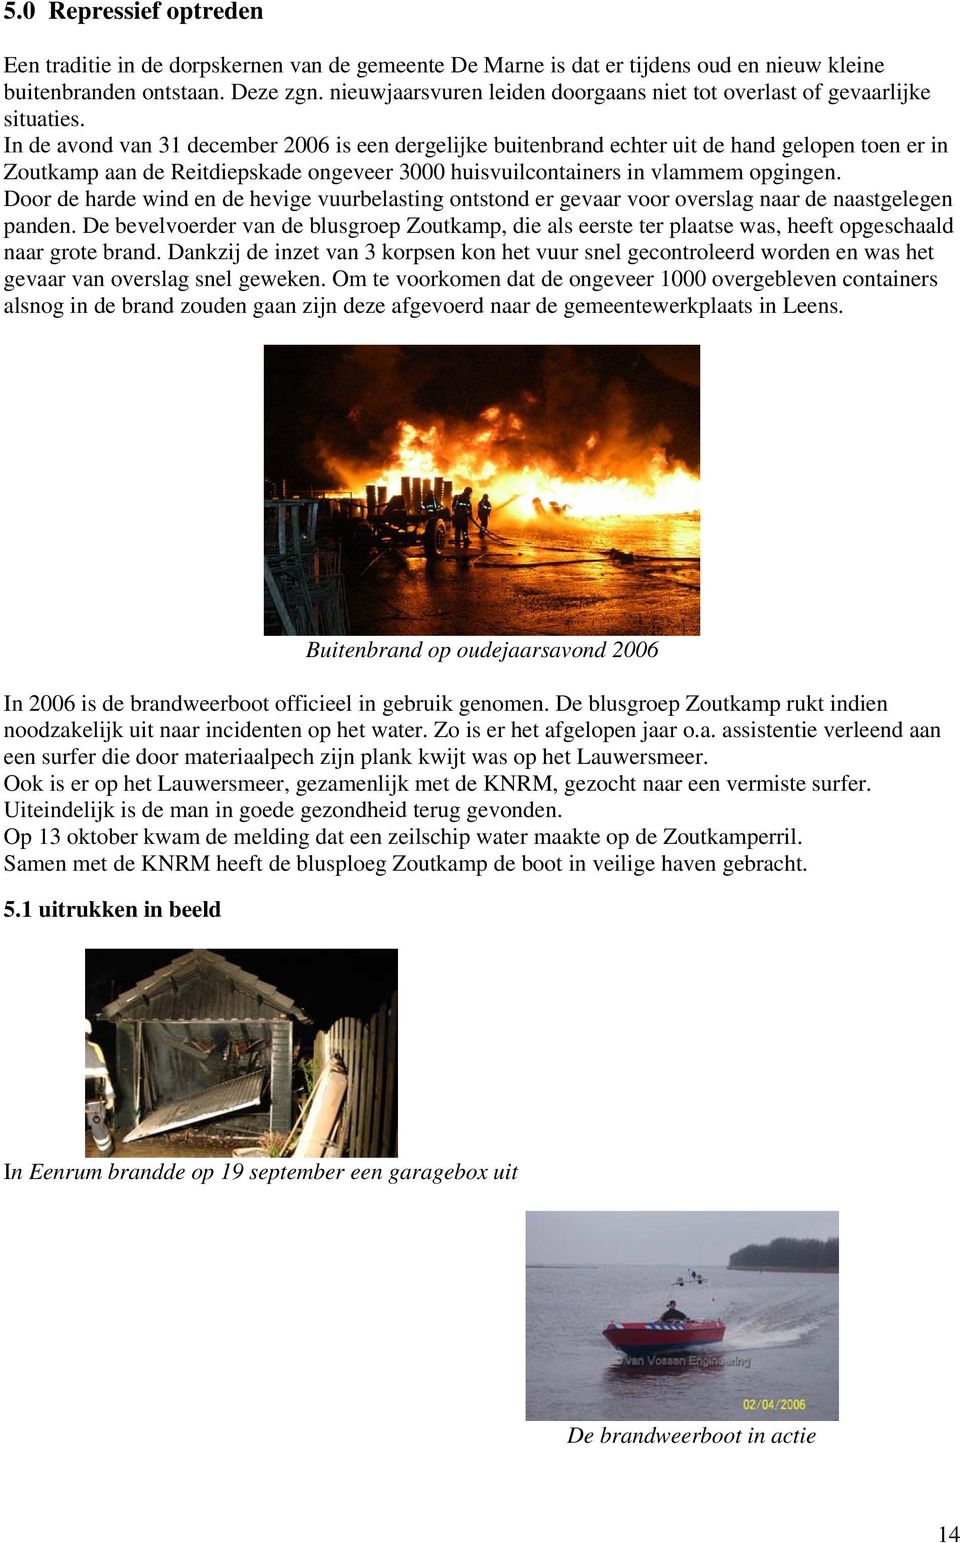 In de avond van 31 december 2006 is een dergelijke buitenbrand echter uit de hand gelopen toen er in Zoutkamp aan de Reitdiepskade ongeveer 3000 huisvuilcontainers in vlammem opgingen.